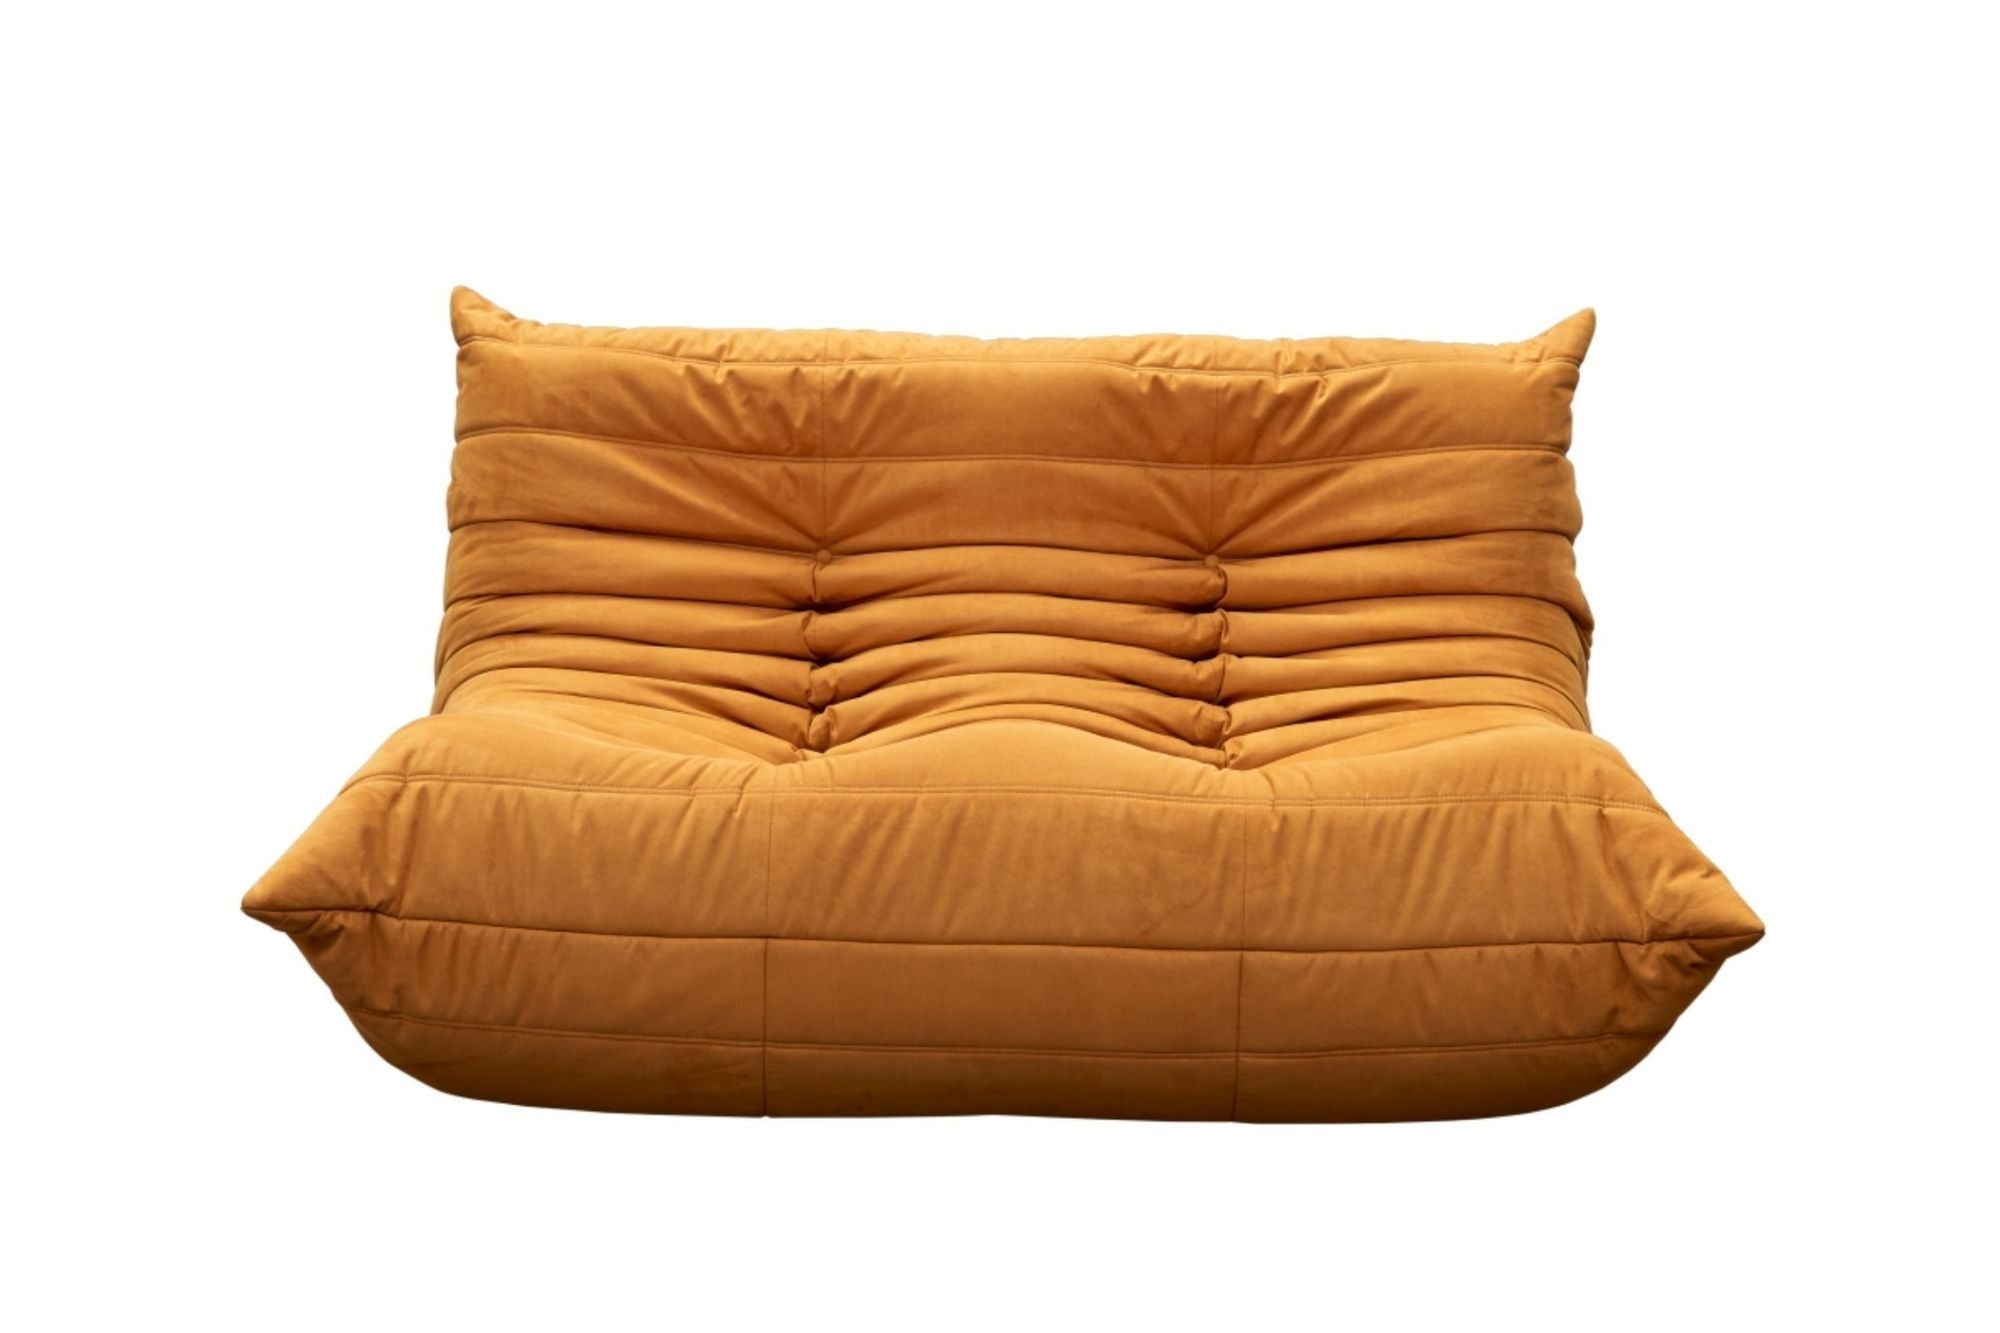 2 Seater Sofa Orange